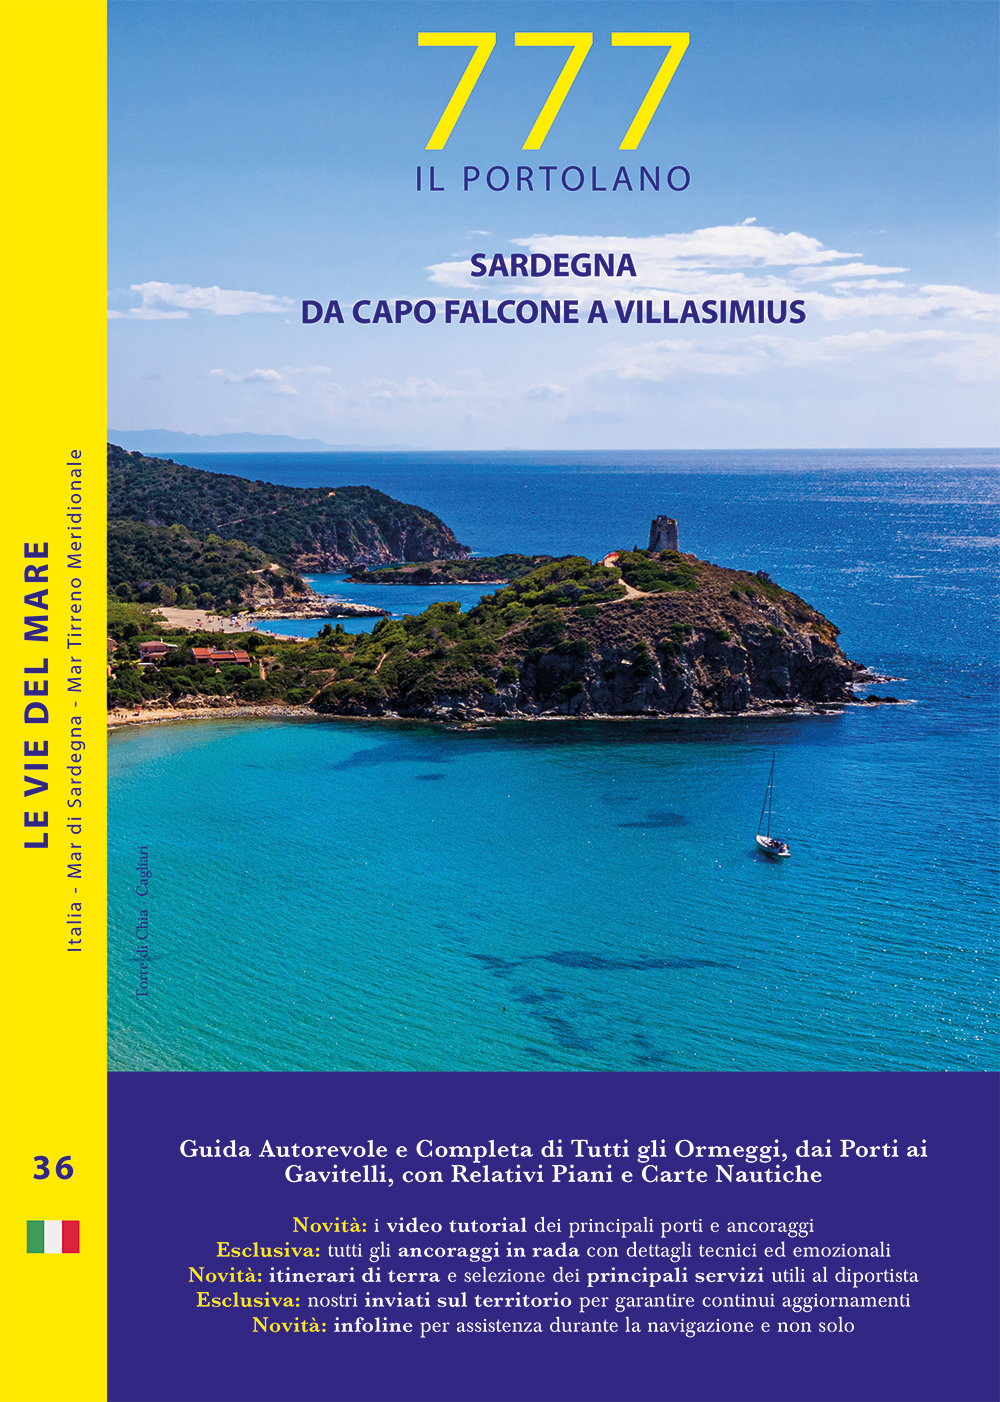 Sardegna – Da Capo Falcone a Villasimius